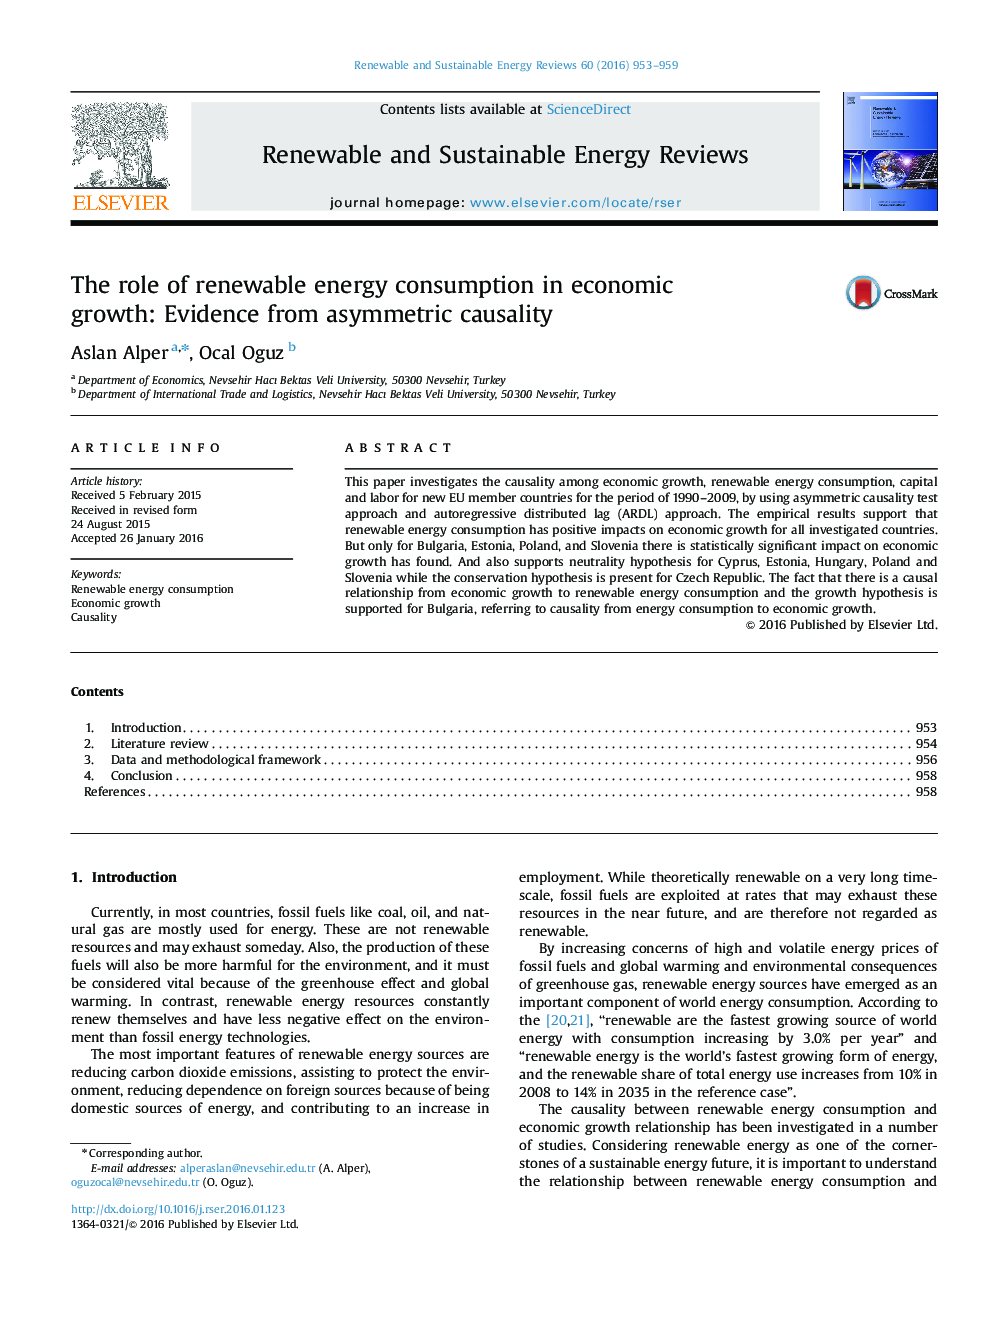 نقش مصرف انرژی تجدیدپذیر در رشد اقتصادی: شواهد از علیت های نامتقارن 